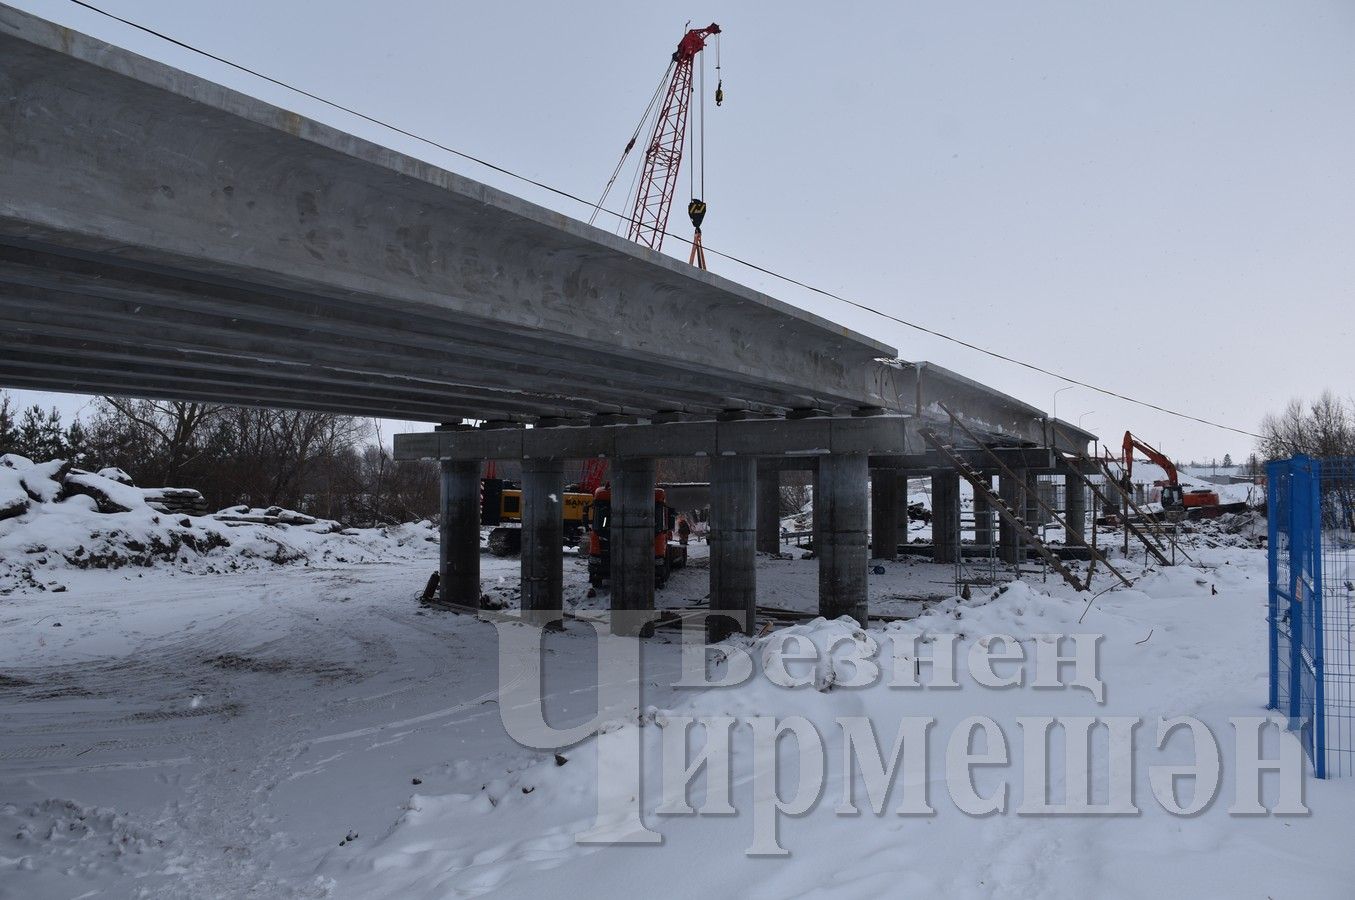 Этим летом планируют сдать в эксплуатацию мост, который строится через реку Большой Черемшан